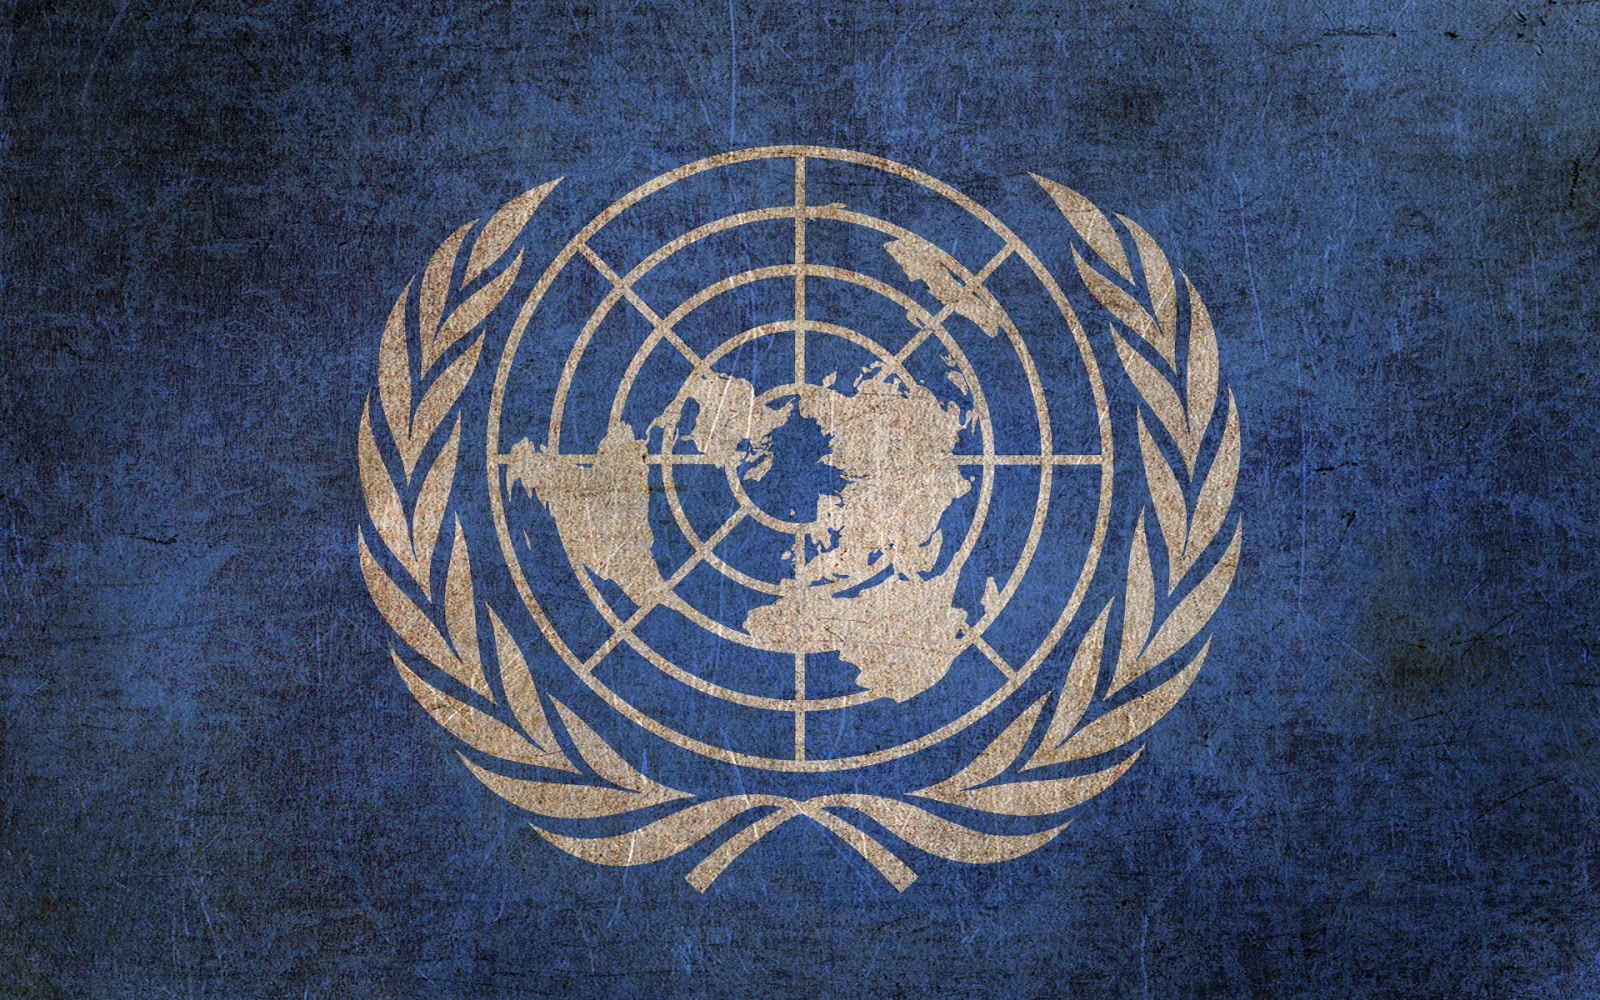 Il Trattato Onu di proibizione delle Armi Nucleari entra in vigore venerdì 22 gennaio 2021- Iniziative Locali 